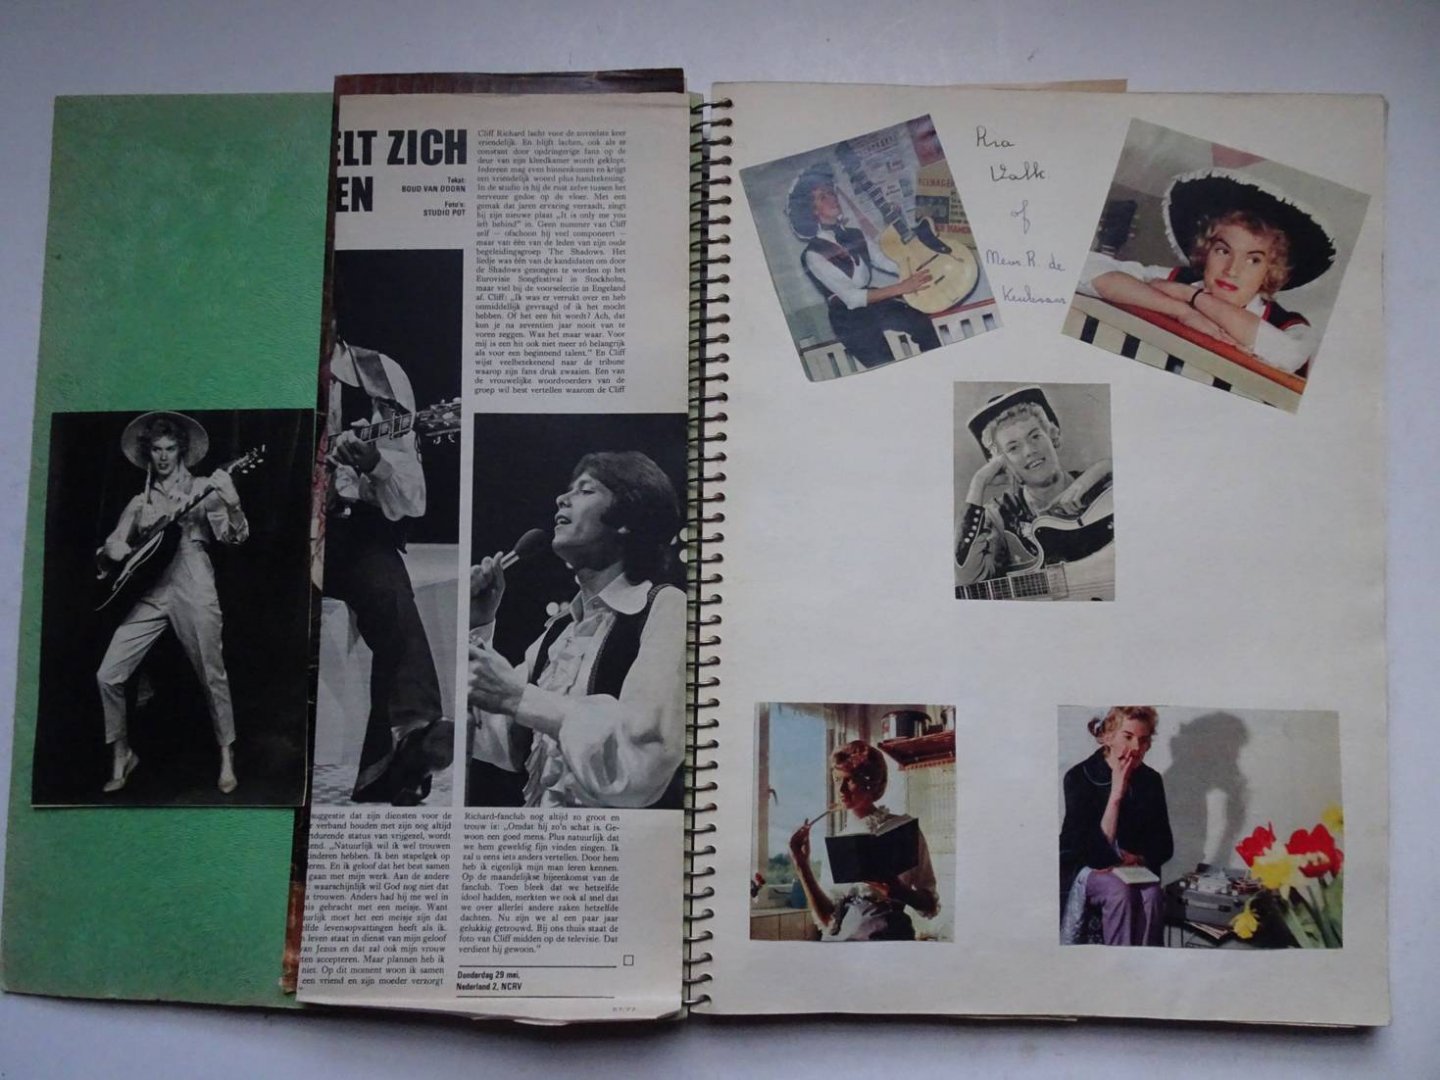 N.n.. - Plakboek met meest ingeplakte foto's uit tijdschriften van o.a The Beatles, the Rolling Stones, Anneke Grönloh, Dave Berry, Ria Valk en vele anderen.